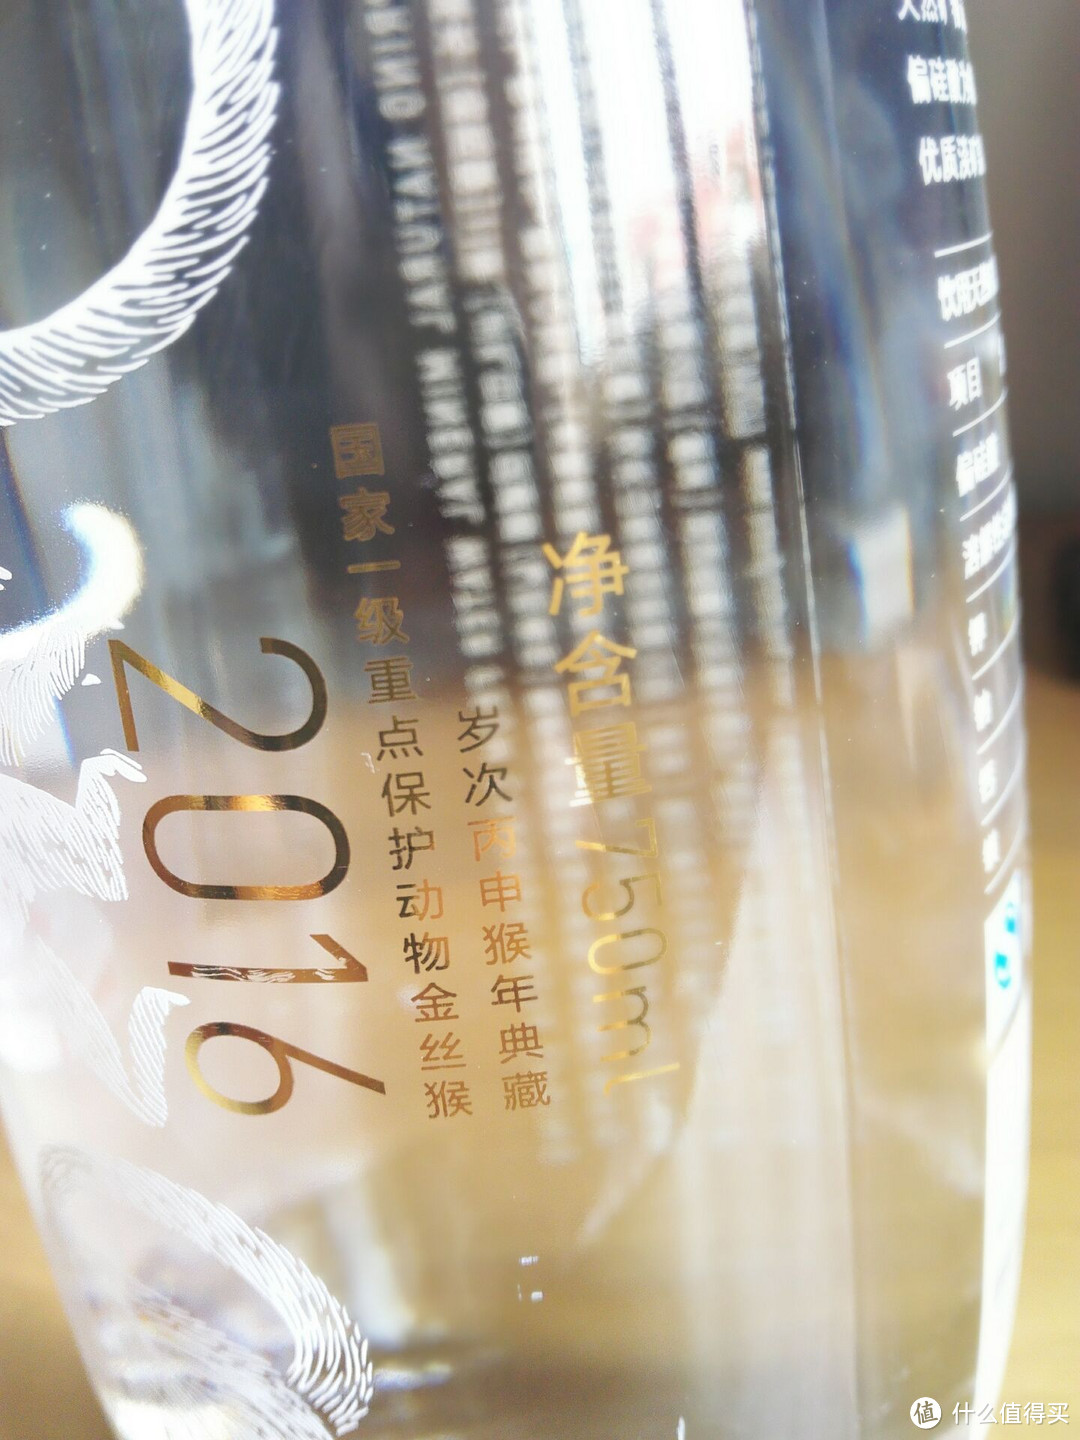 农夫山泉 2016 猴年纪念版玻璃瓶装矿泉水